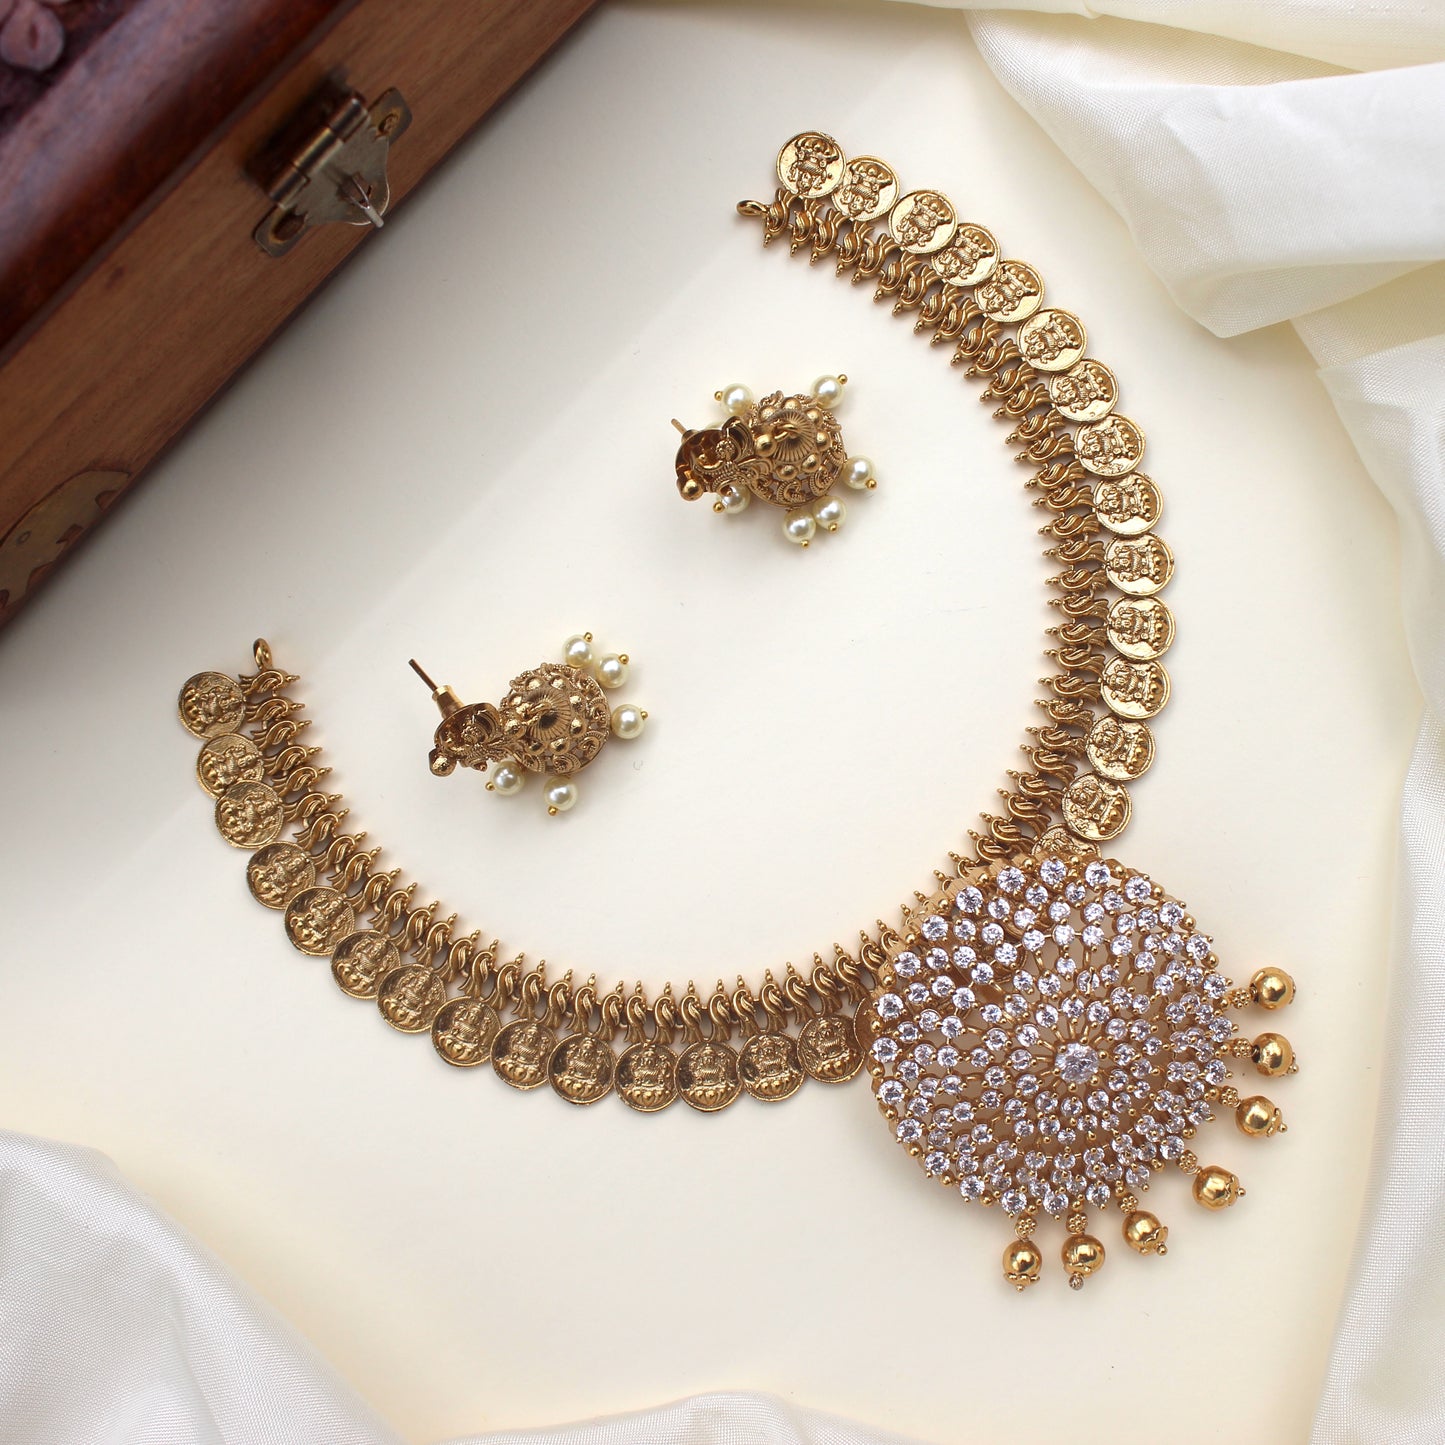 Antique Lakshmi Necklace with Removable AD Diamond Look Pendant